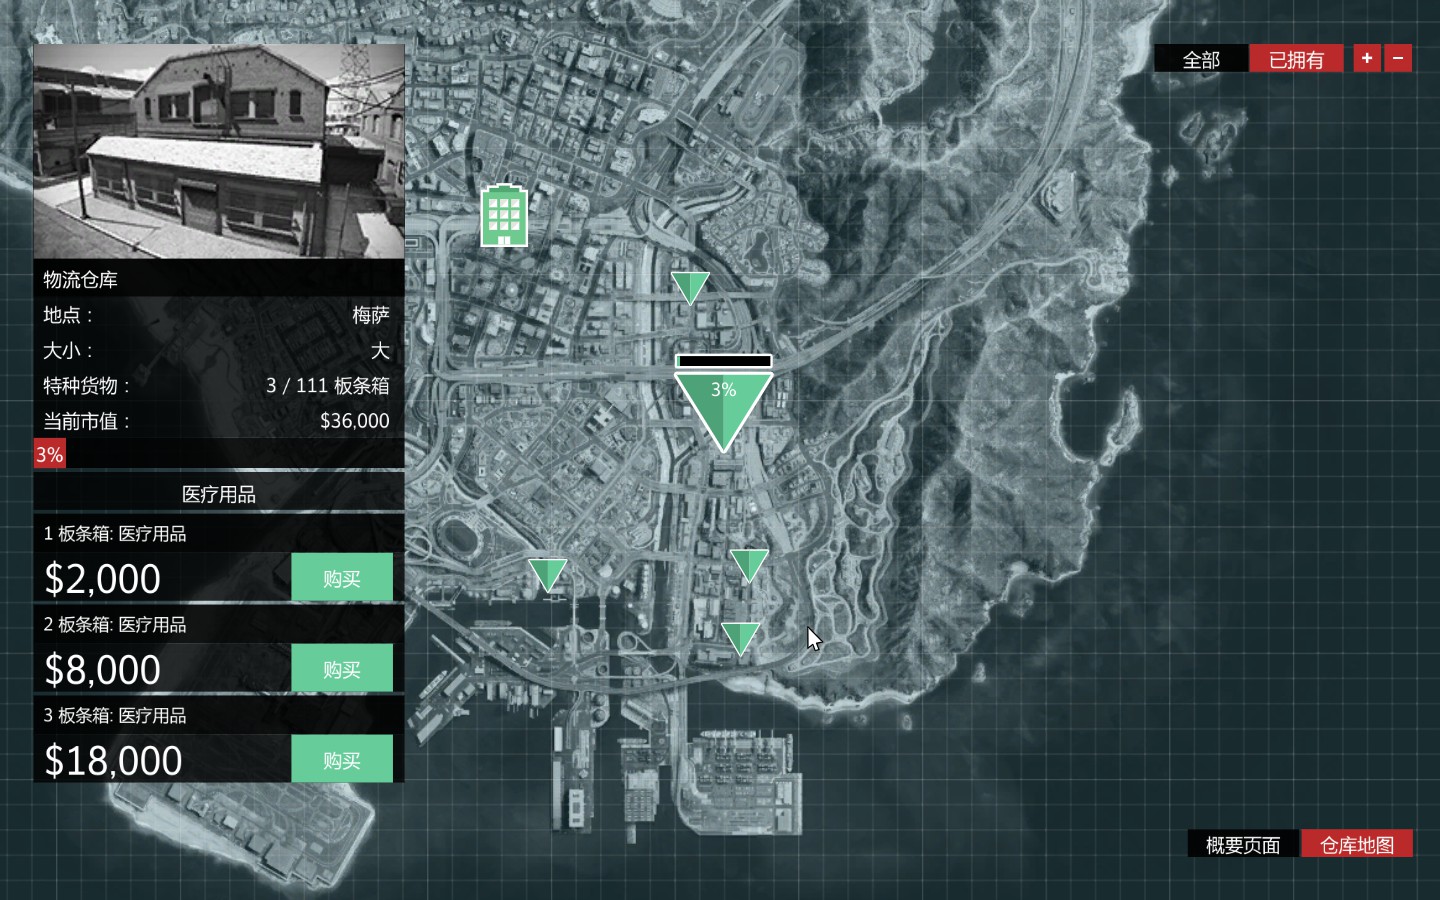 侠盗猎车手5(GTA5)CEO办公室与特种货物仓库玩法讲解分析